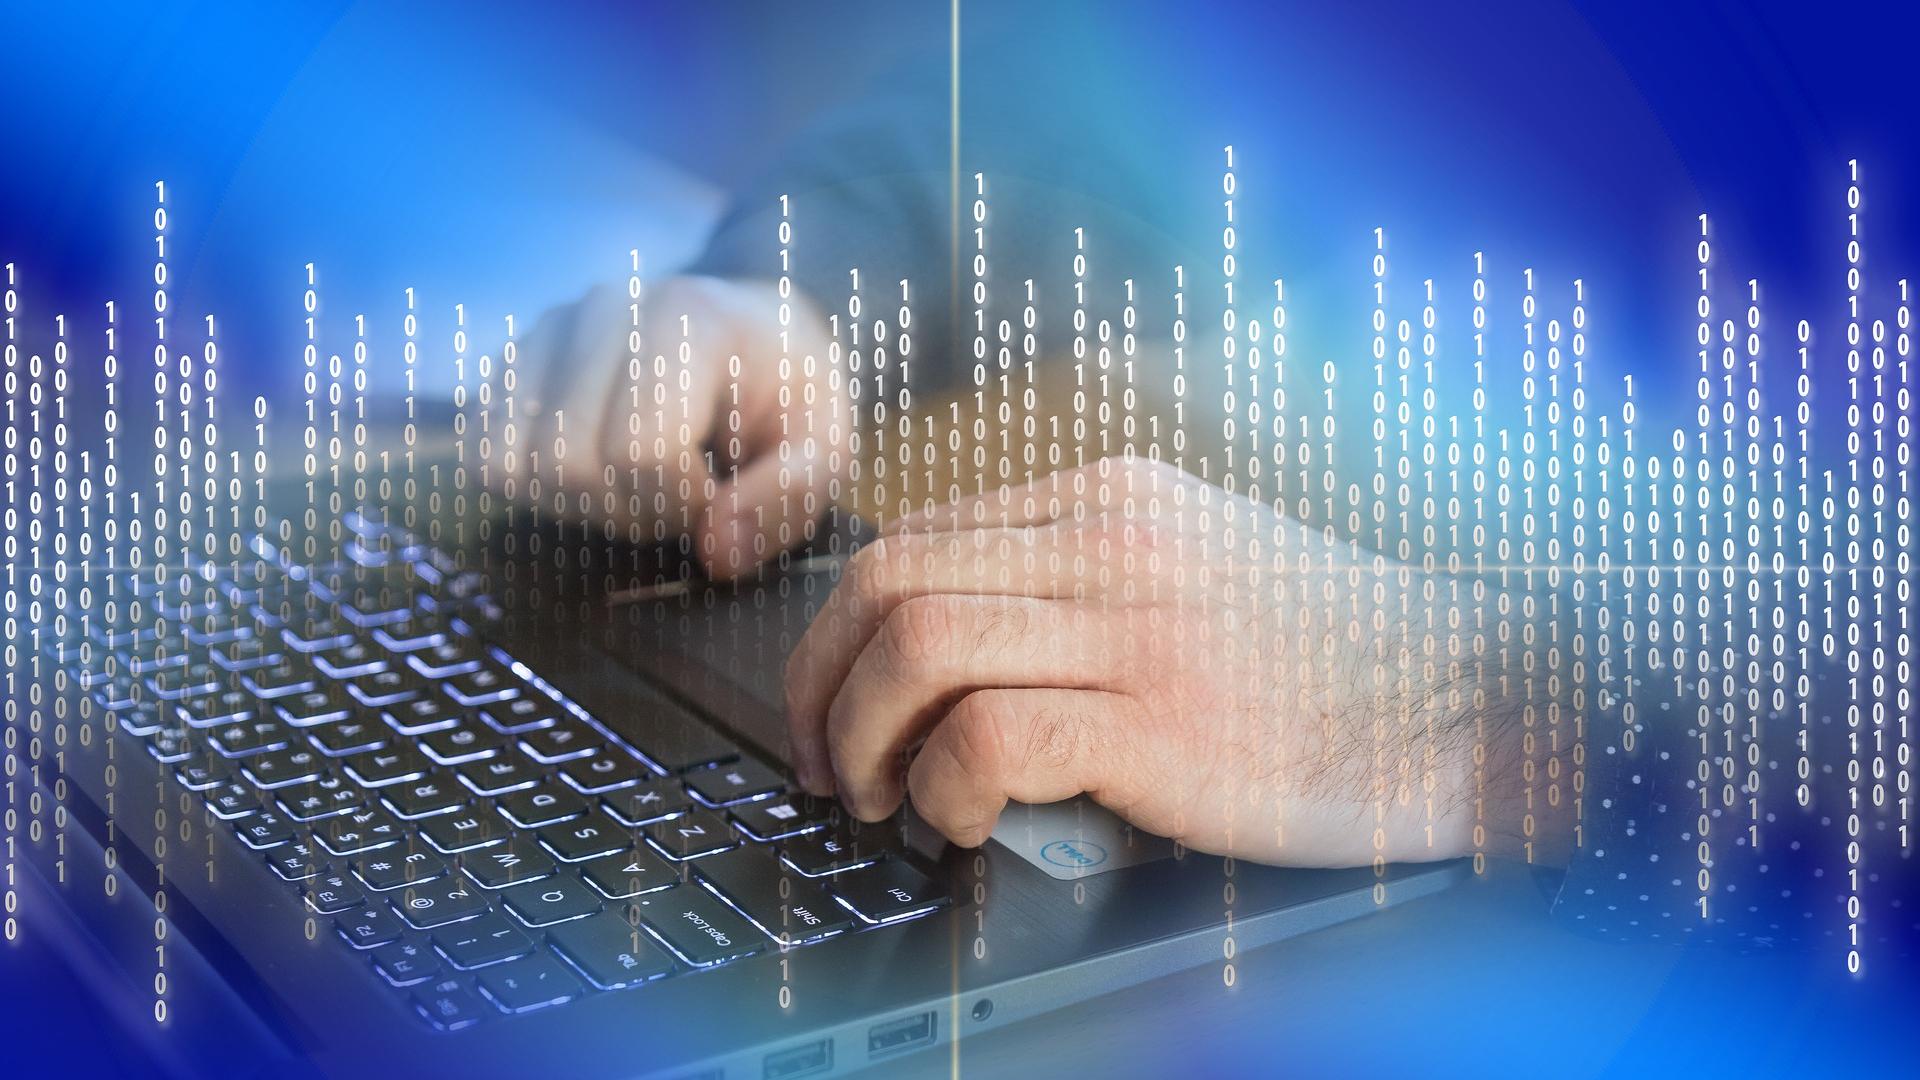 Stimmungsbild zum Beitrag: Es werden männliche Hände auf der Tastatur eines Laptops mit Zahlenkombinationen im Vordergrund abgebildet.